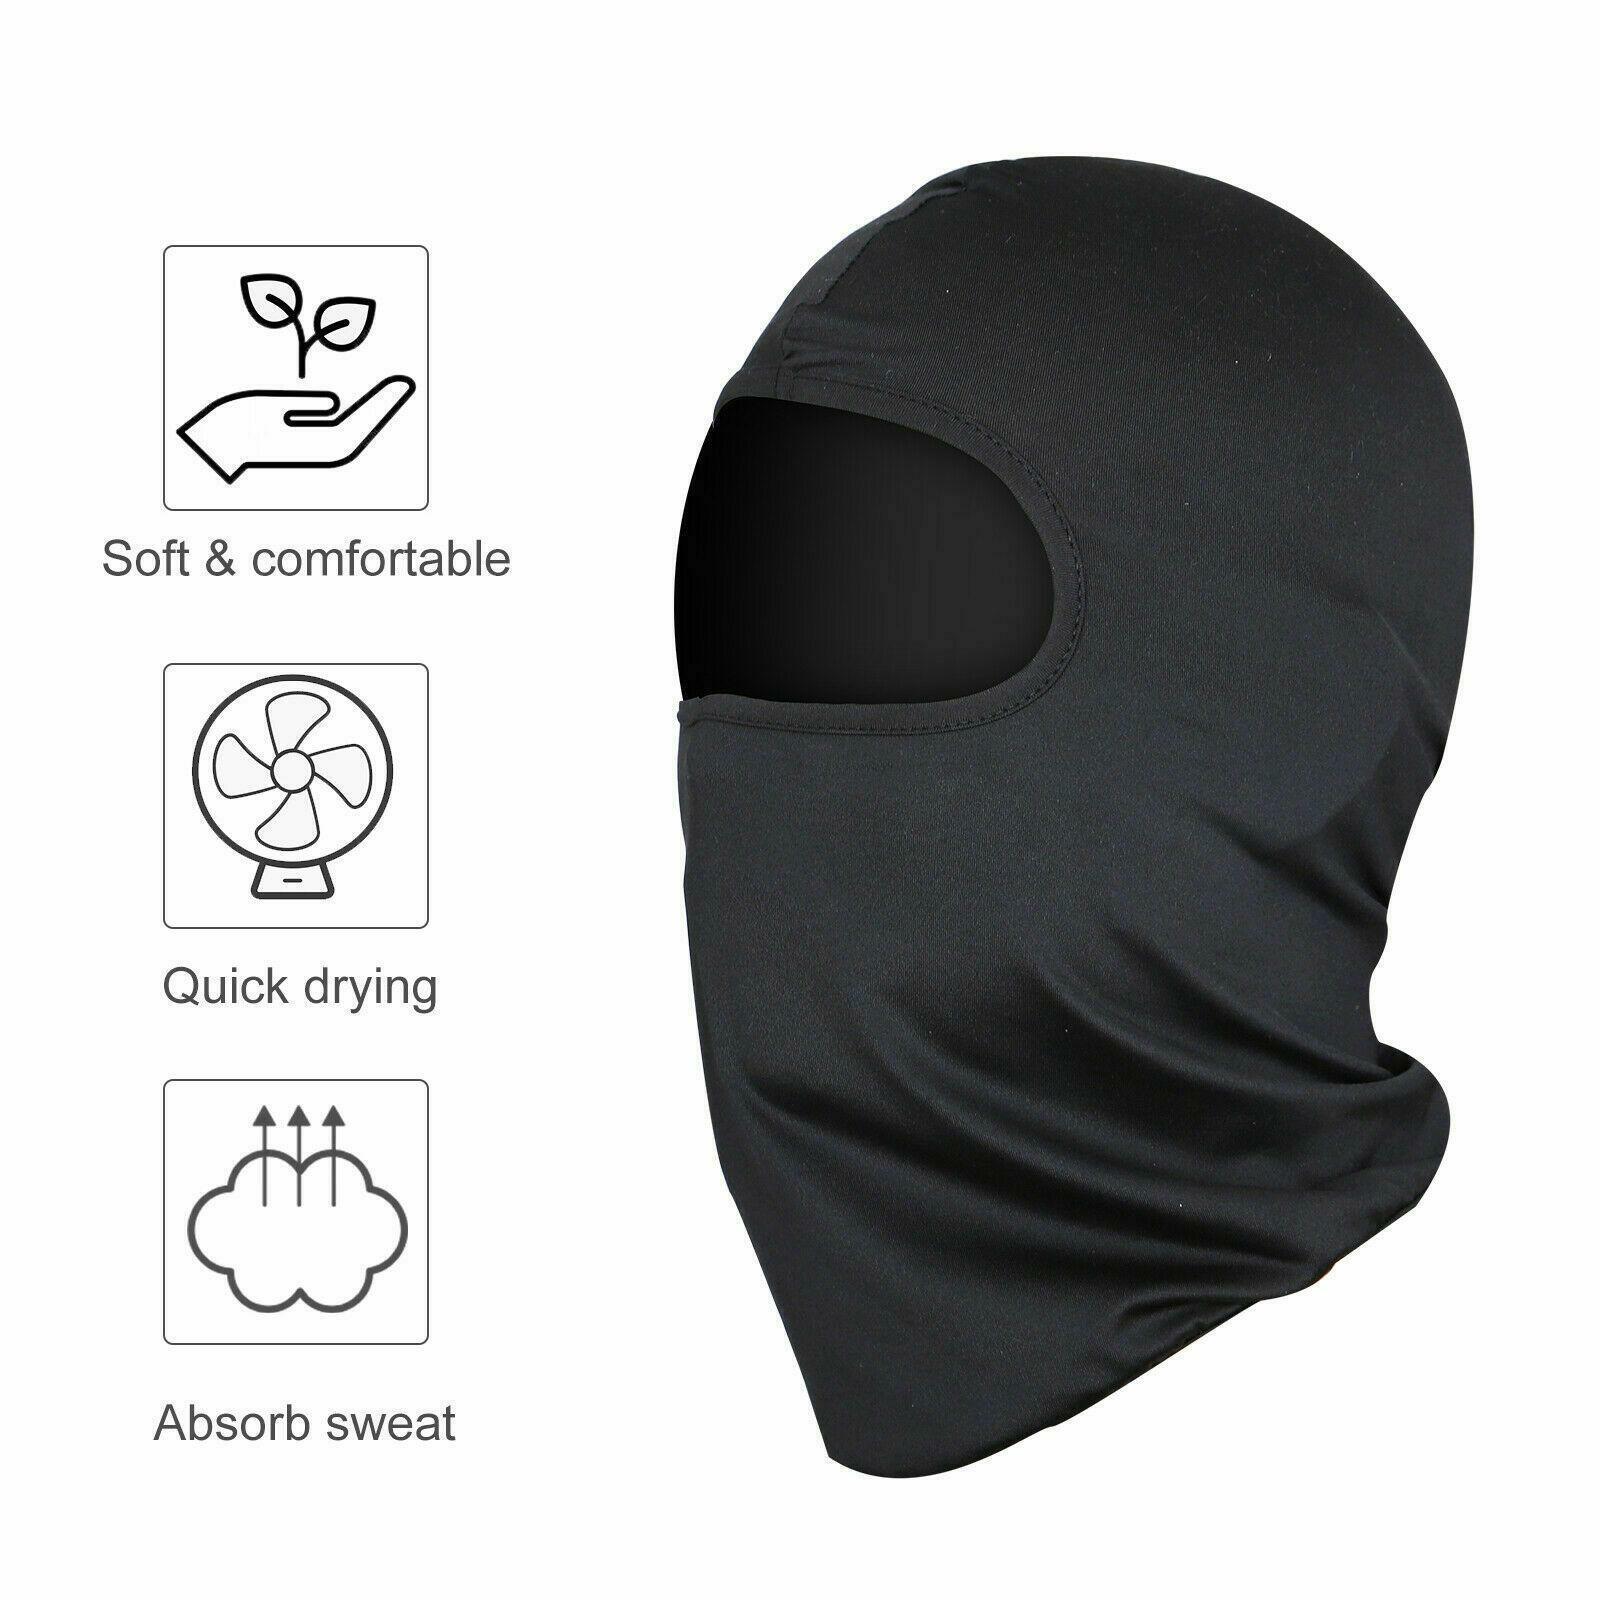 Pasamontañas Para El Frio Termico Calido Mascara De Proteccion Invierno Comodos Unbranded Does Not Apply - фотография #11